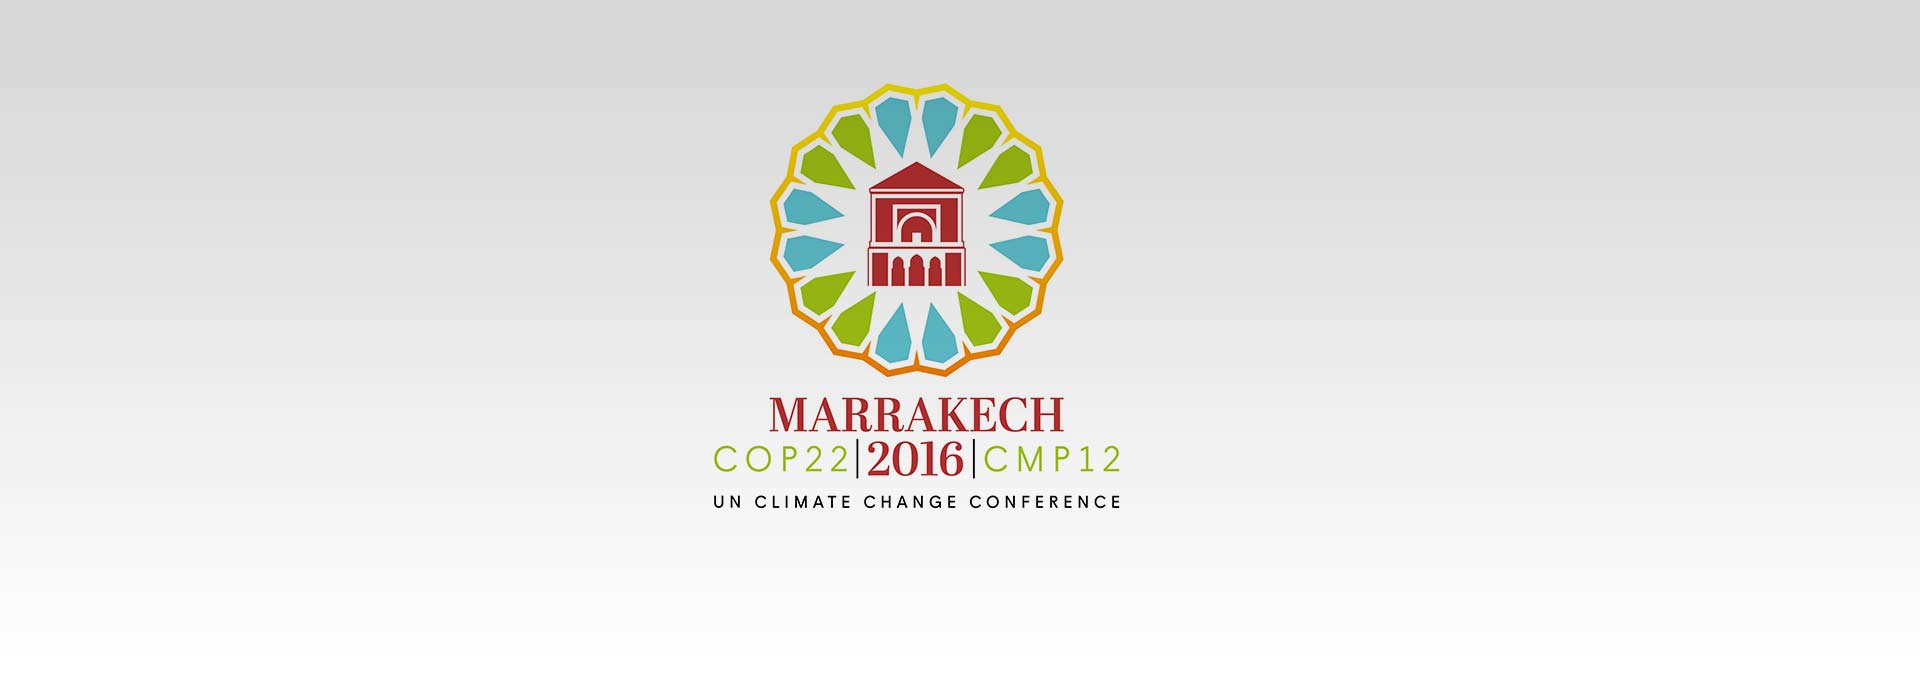 5 Novembre 2016 : La COP 22 fera son bilan Gaz à effet de serre avec la Fondation Mohammed VI pour la Protection de l’Environnement.